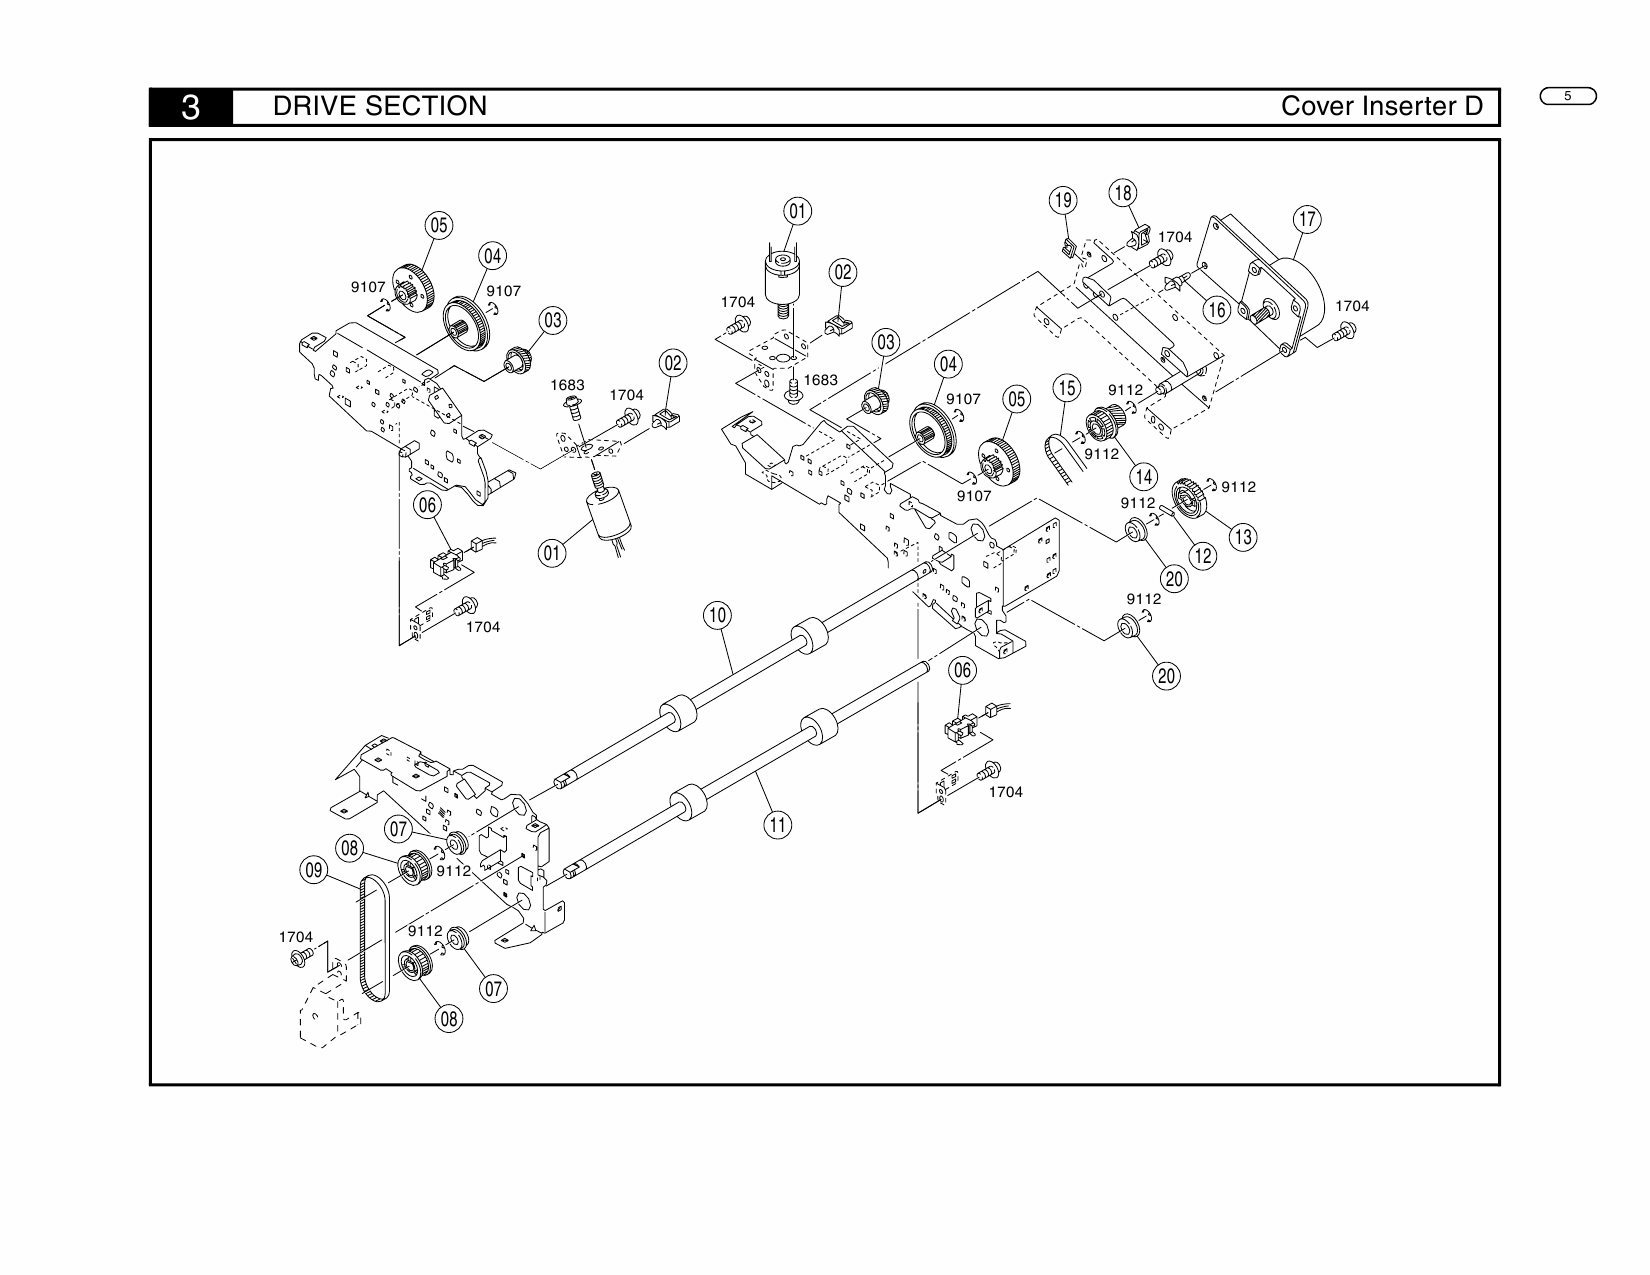 Konica-Minolta Options Cover-Inserter-D Parts Manual-5